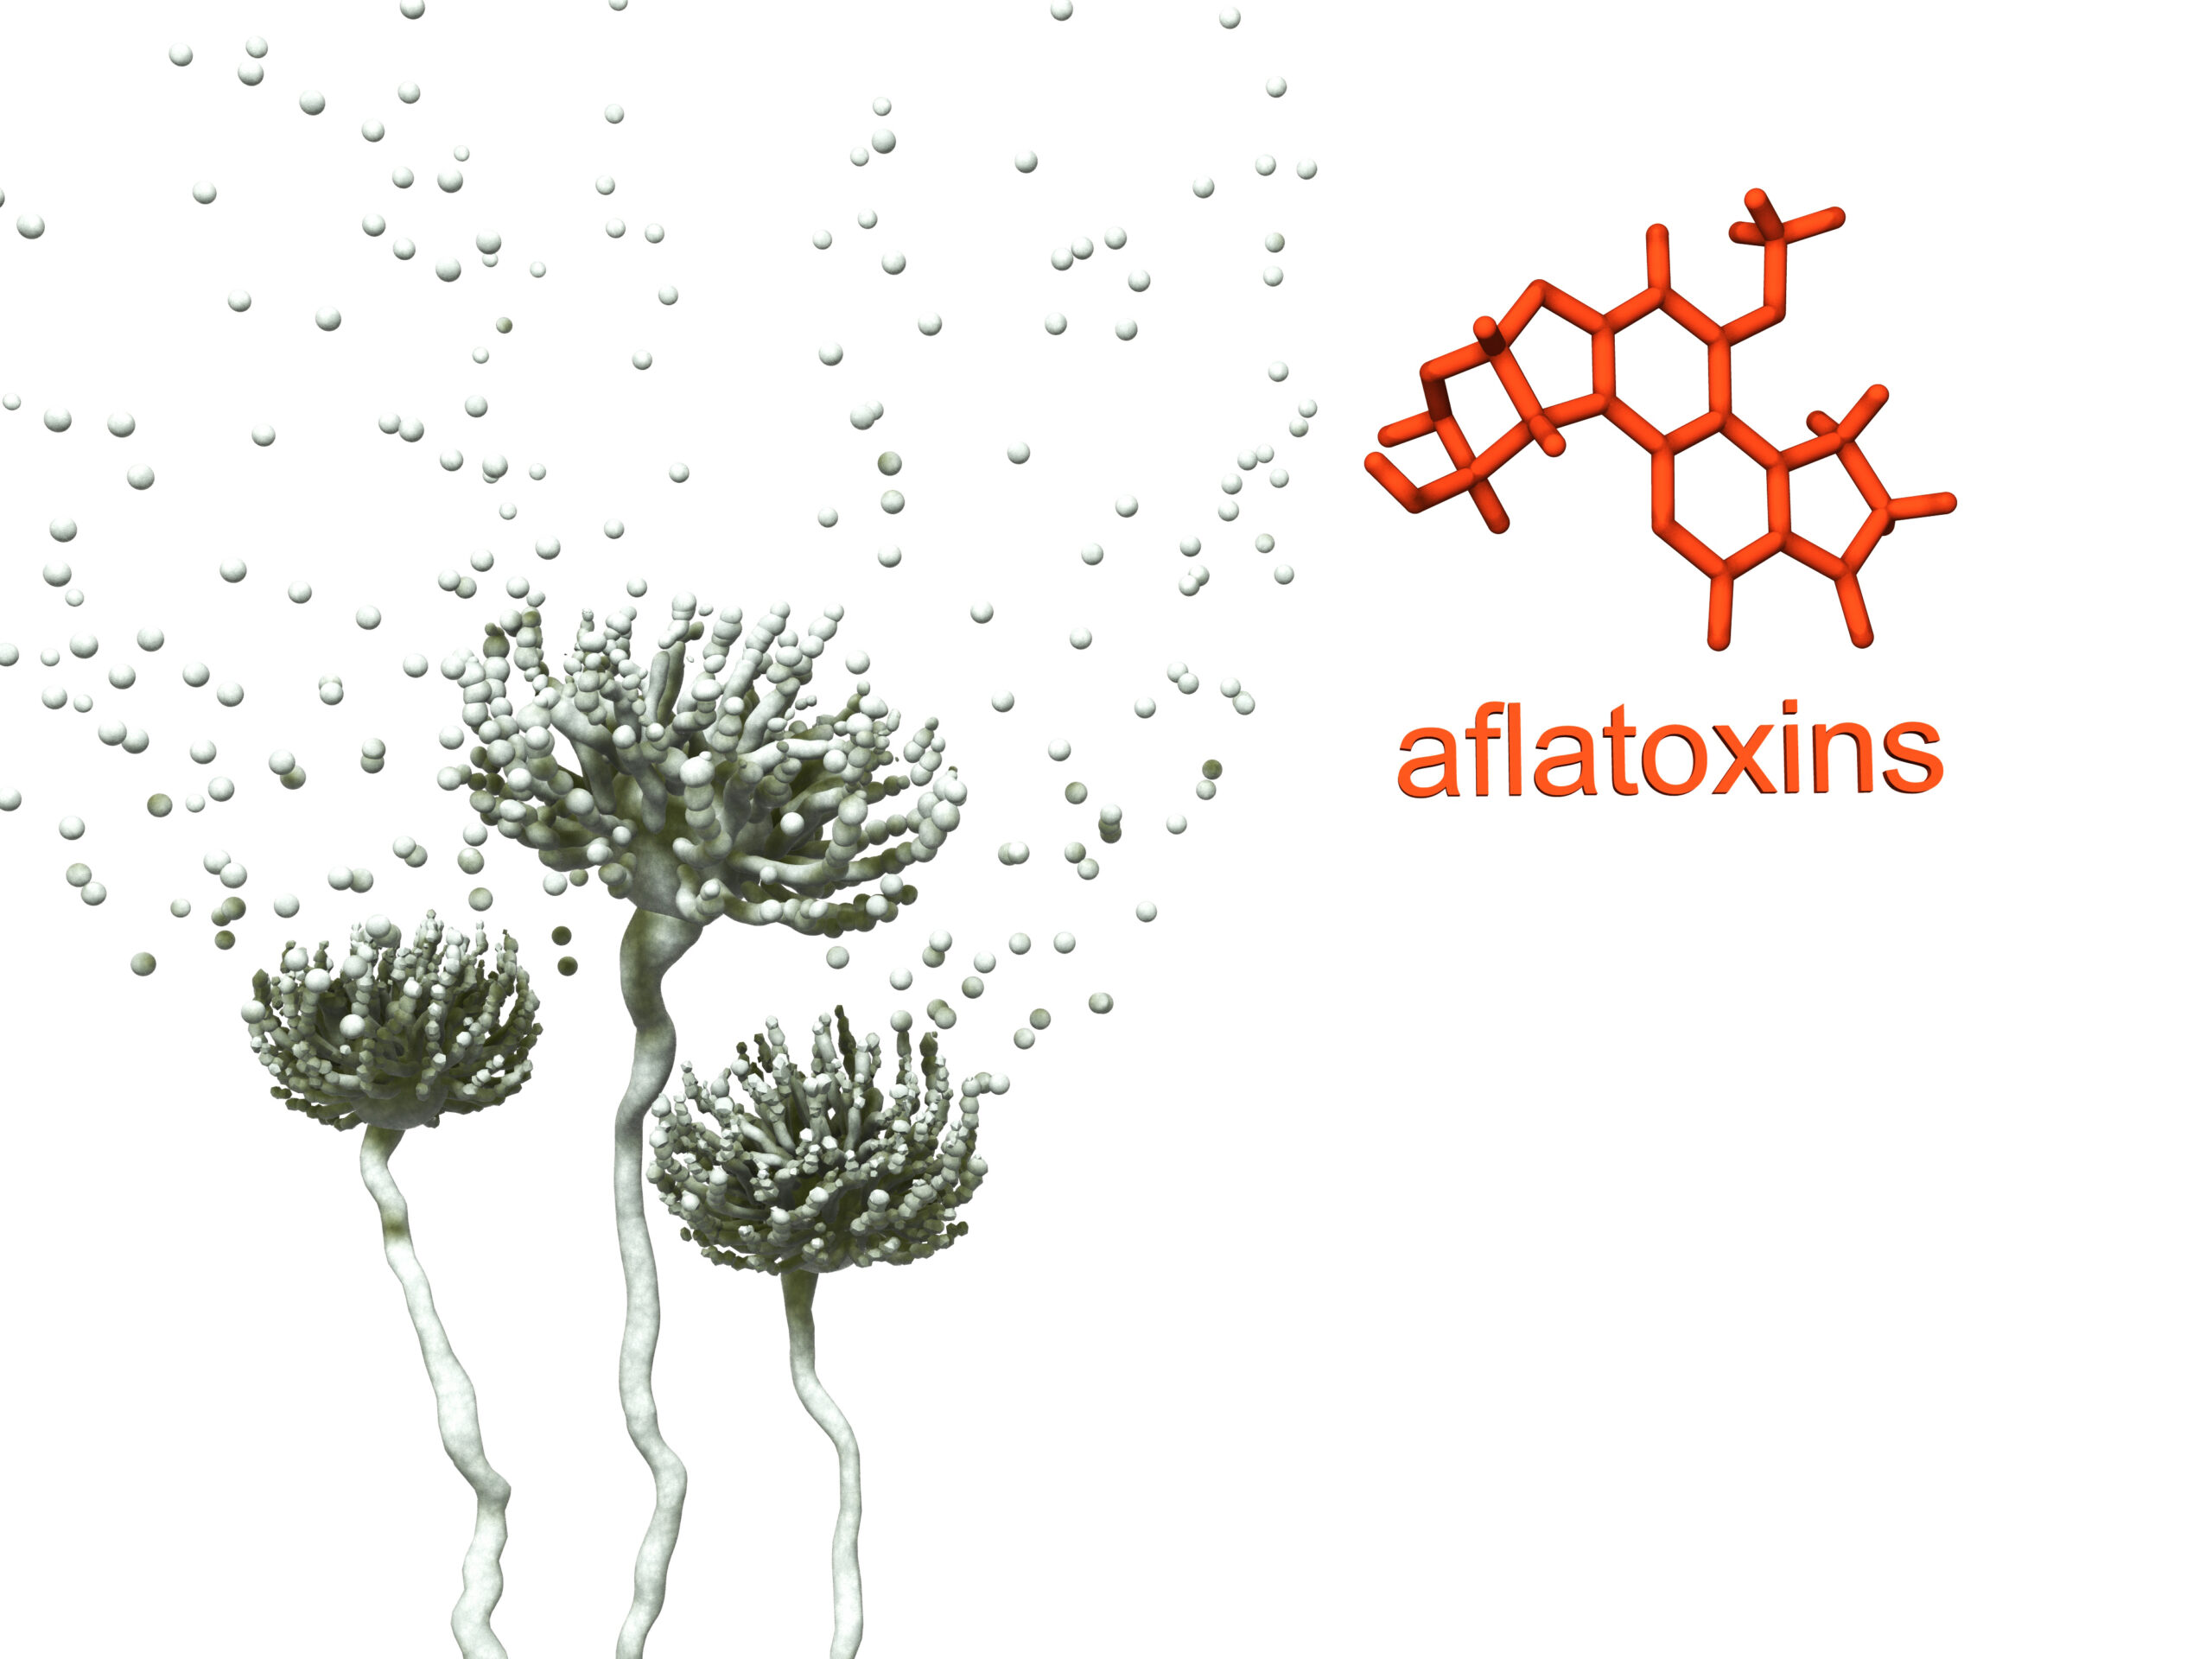 Aflotoxins